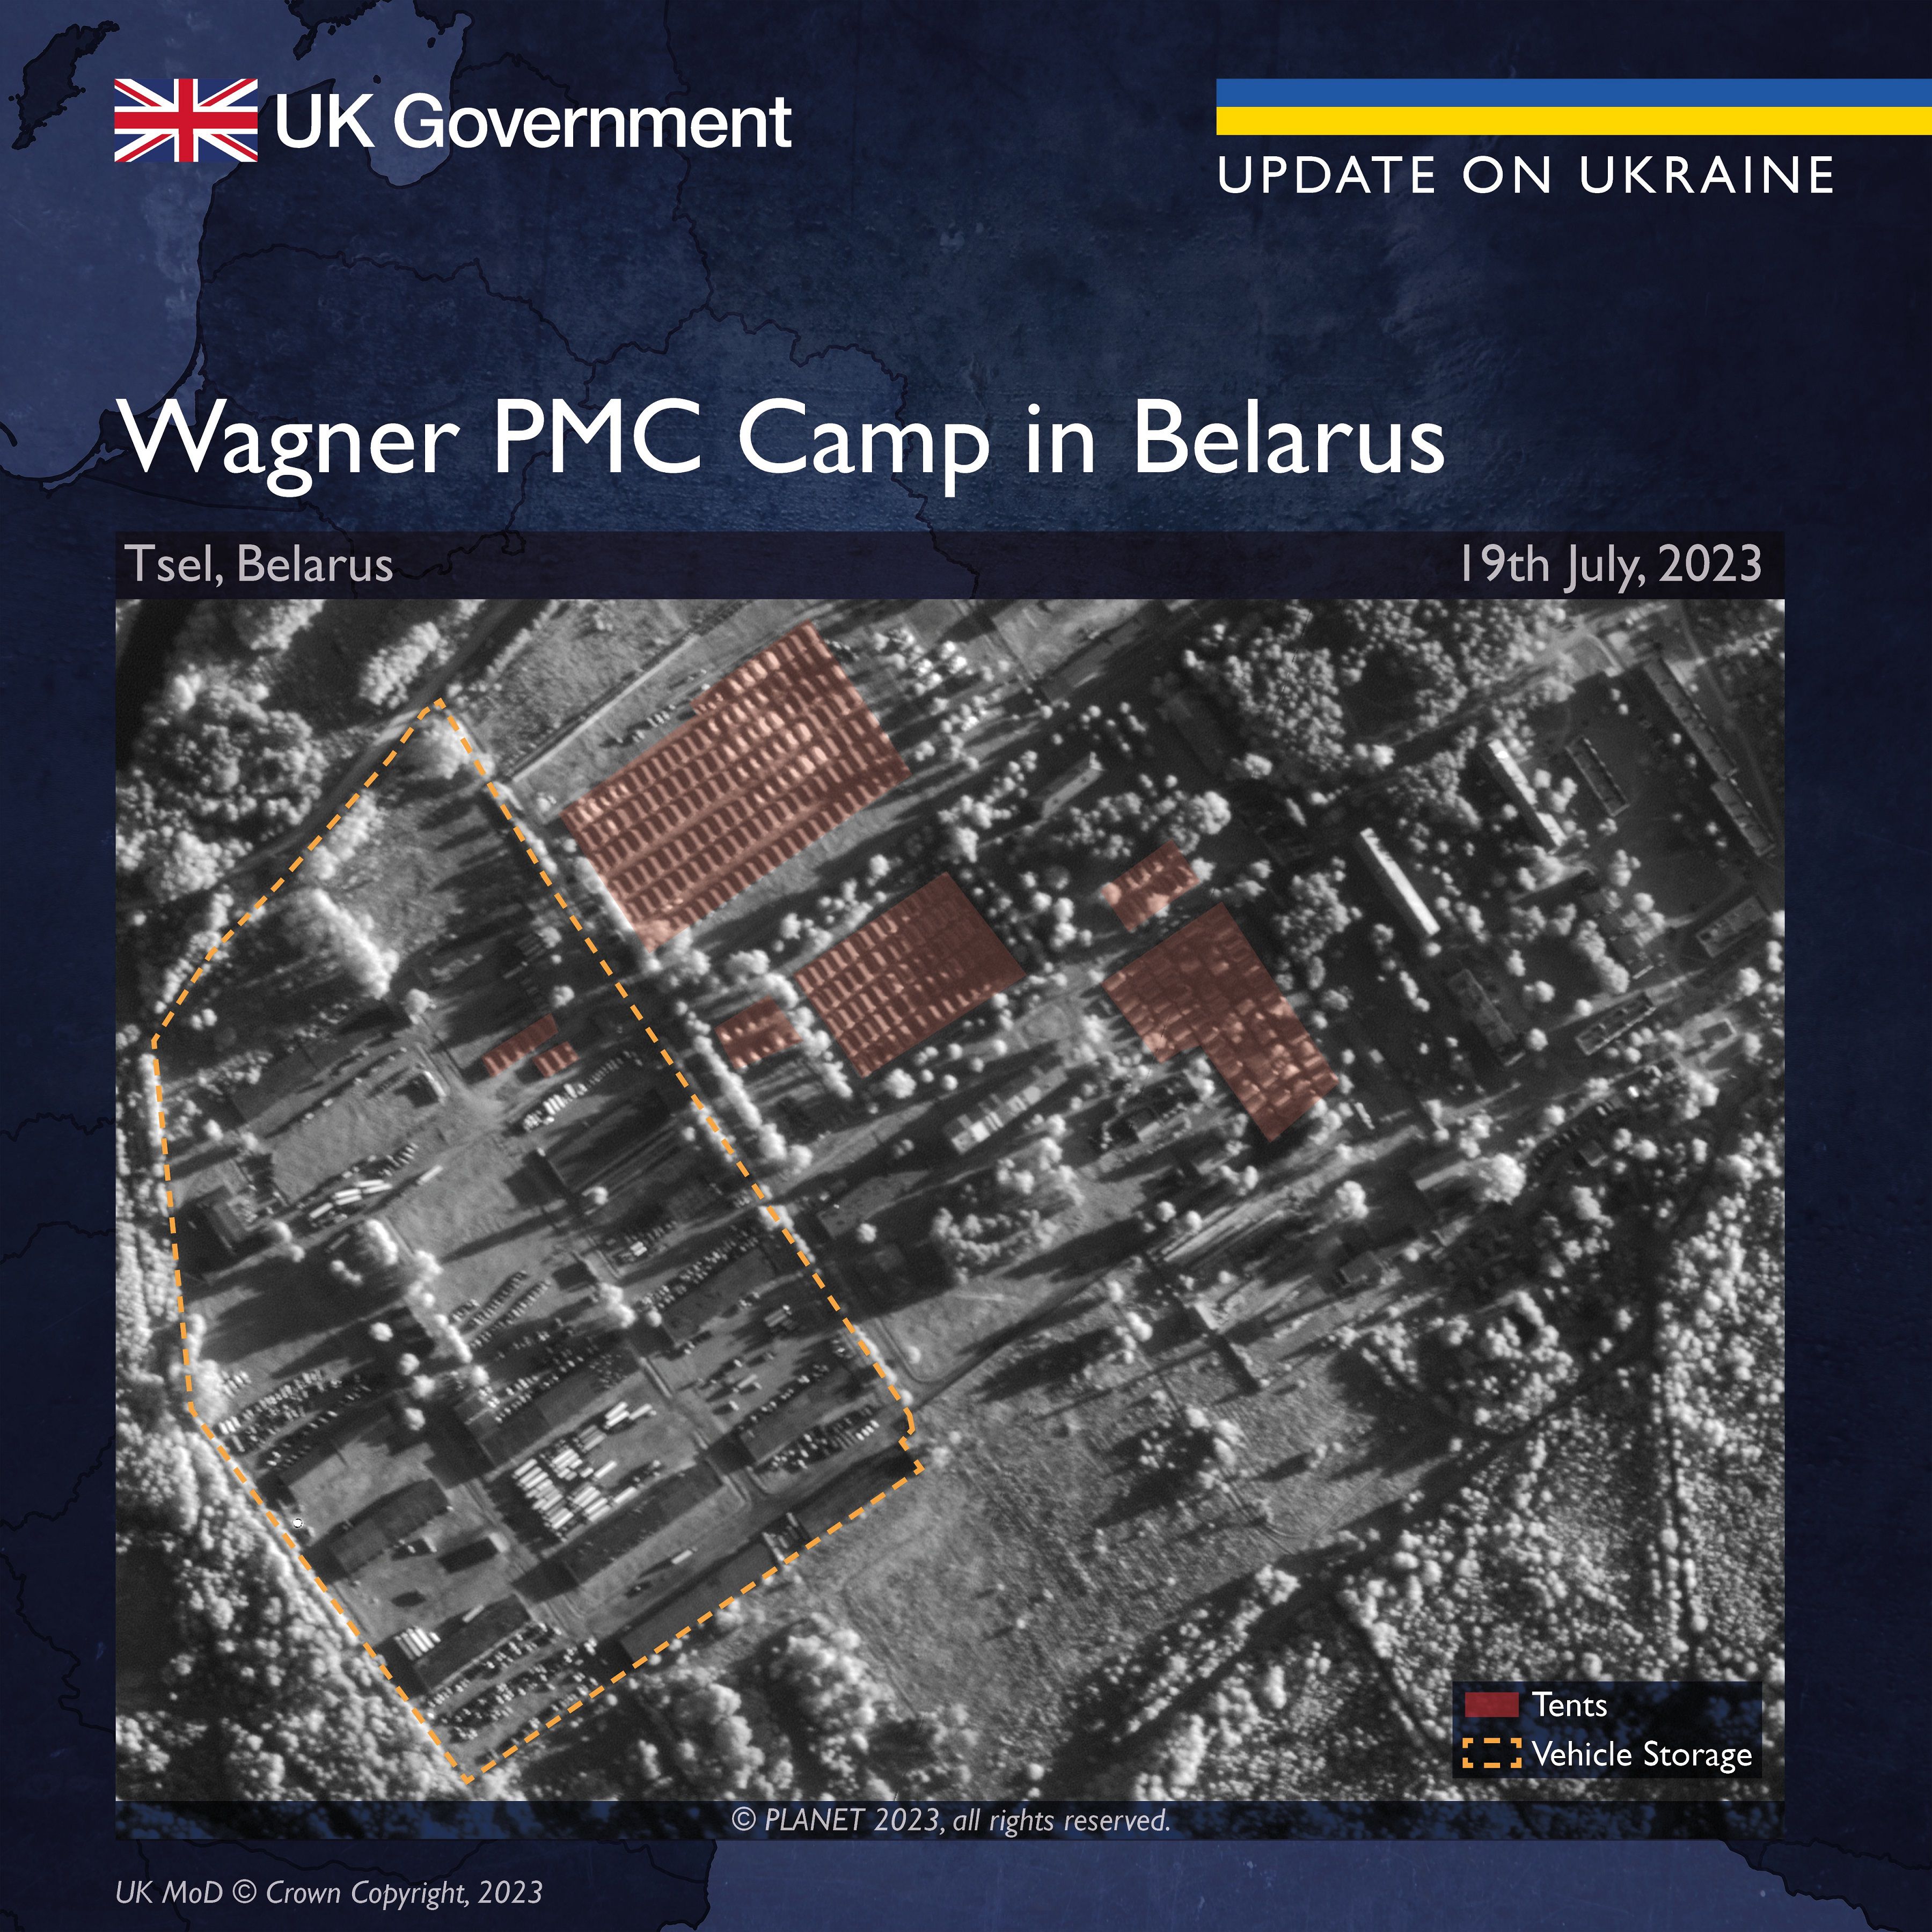 Campamento de Wagner en Bielorrusia (Ministerio de Defensa británico)